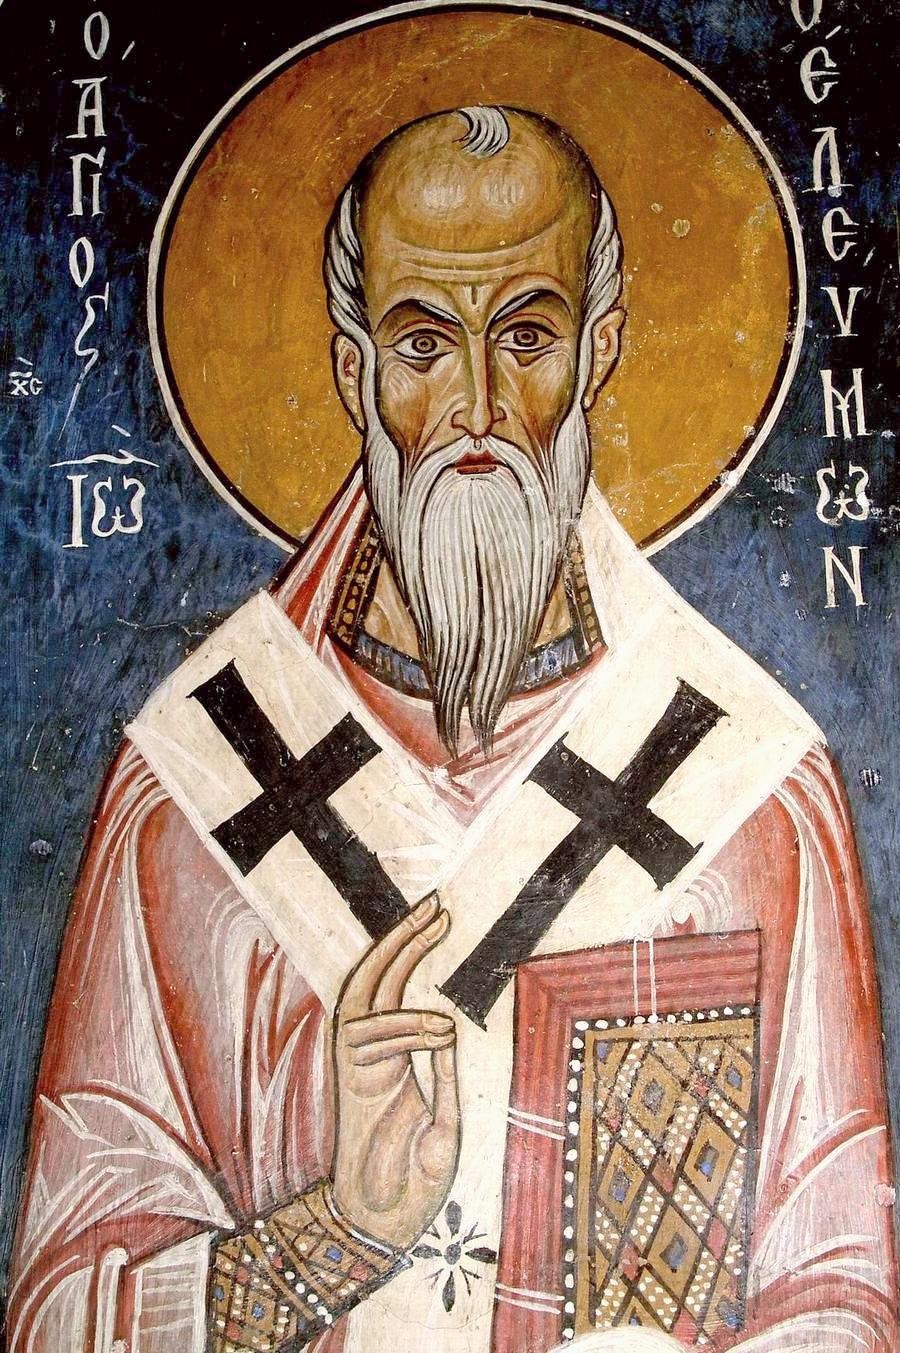 Святитель Иоанн Милостивый. Фреска церкви Святого Николая "тис стегис" ("под крышей") на Кипре. XII век.